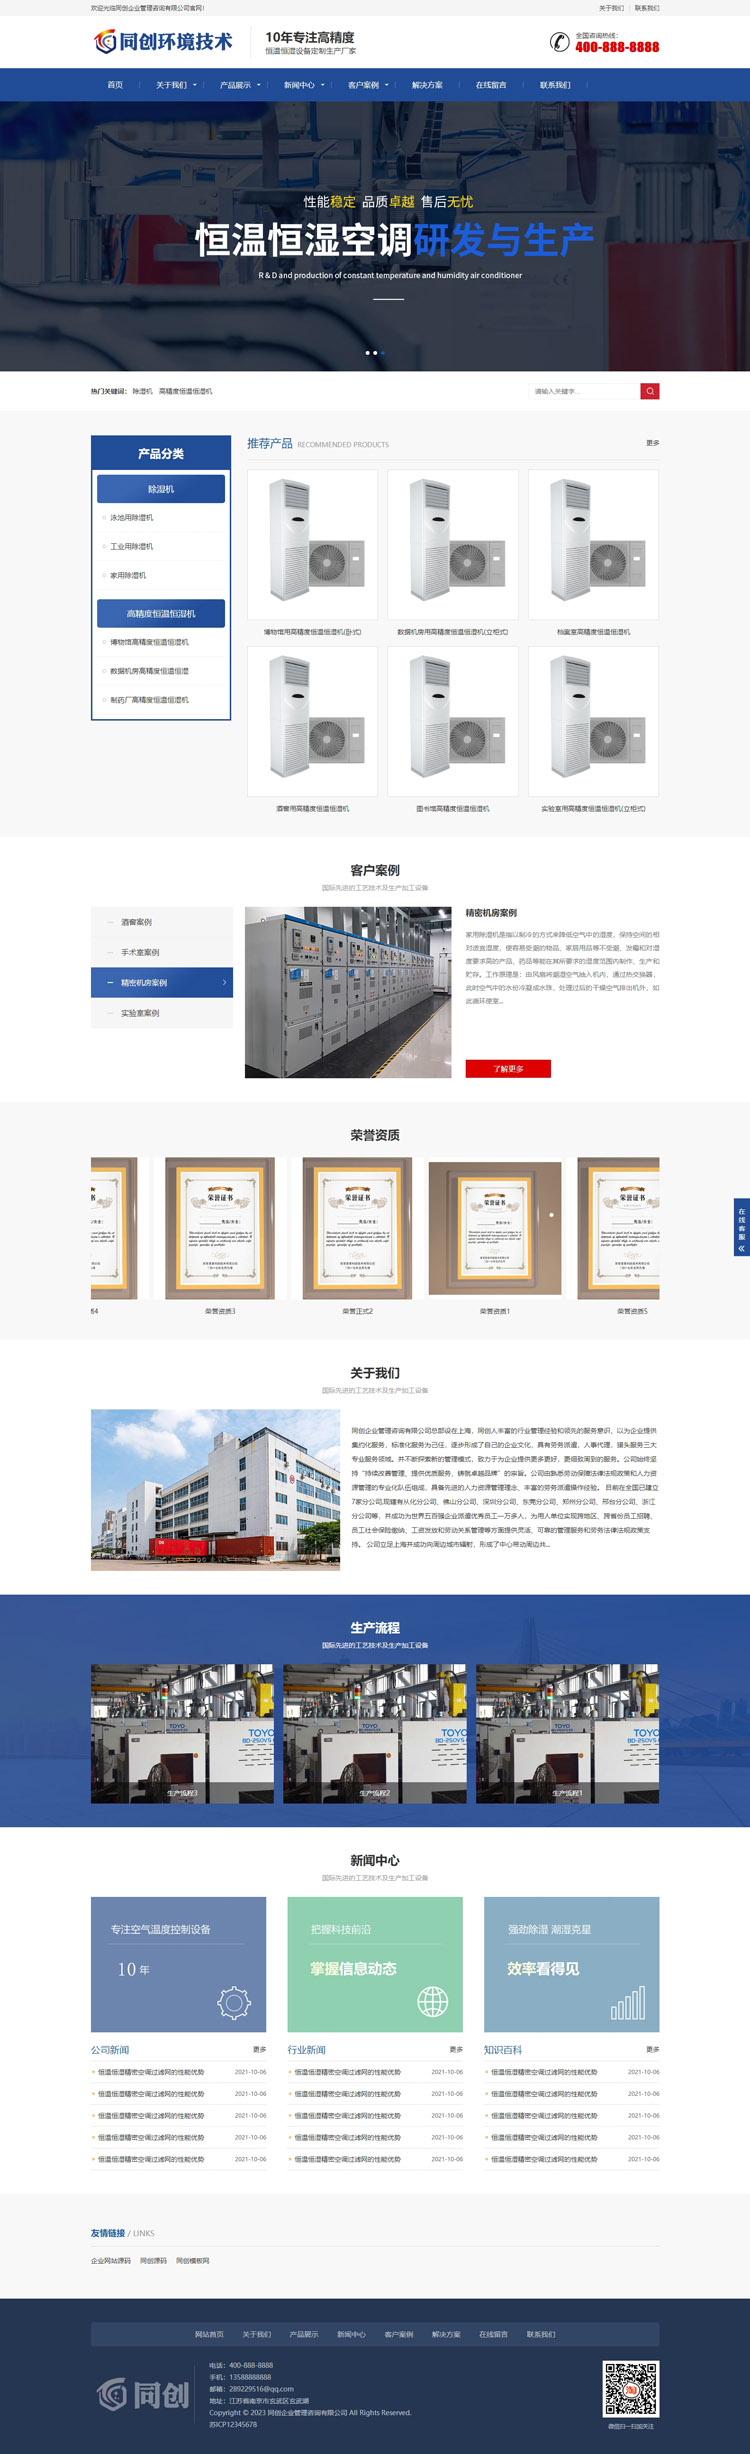 自适应蓝色营销型空调设备网站源码-TC027-2